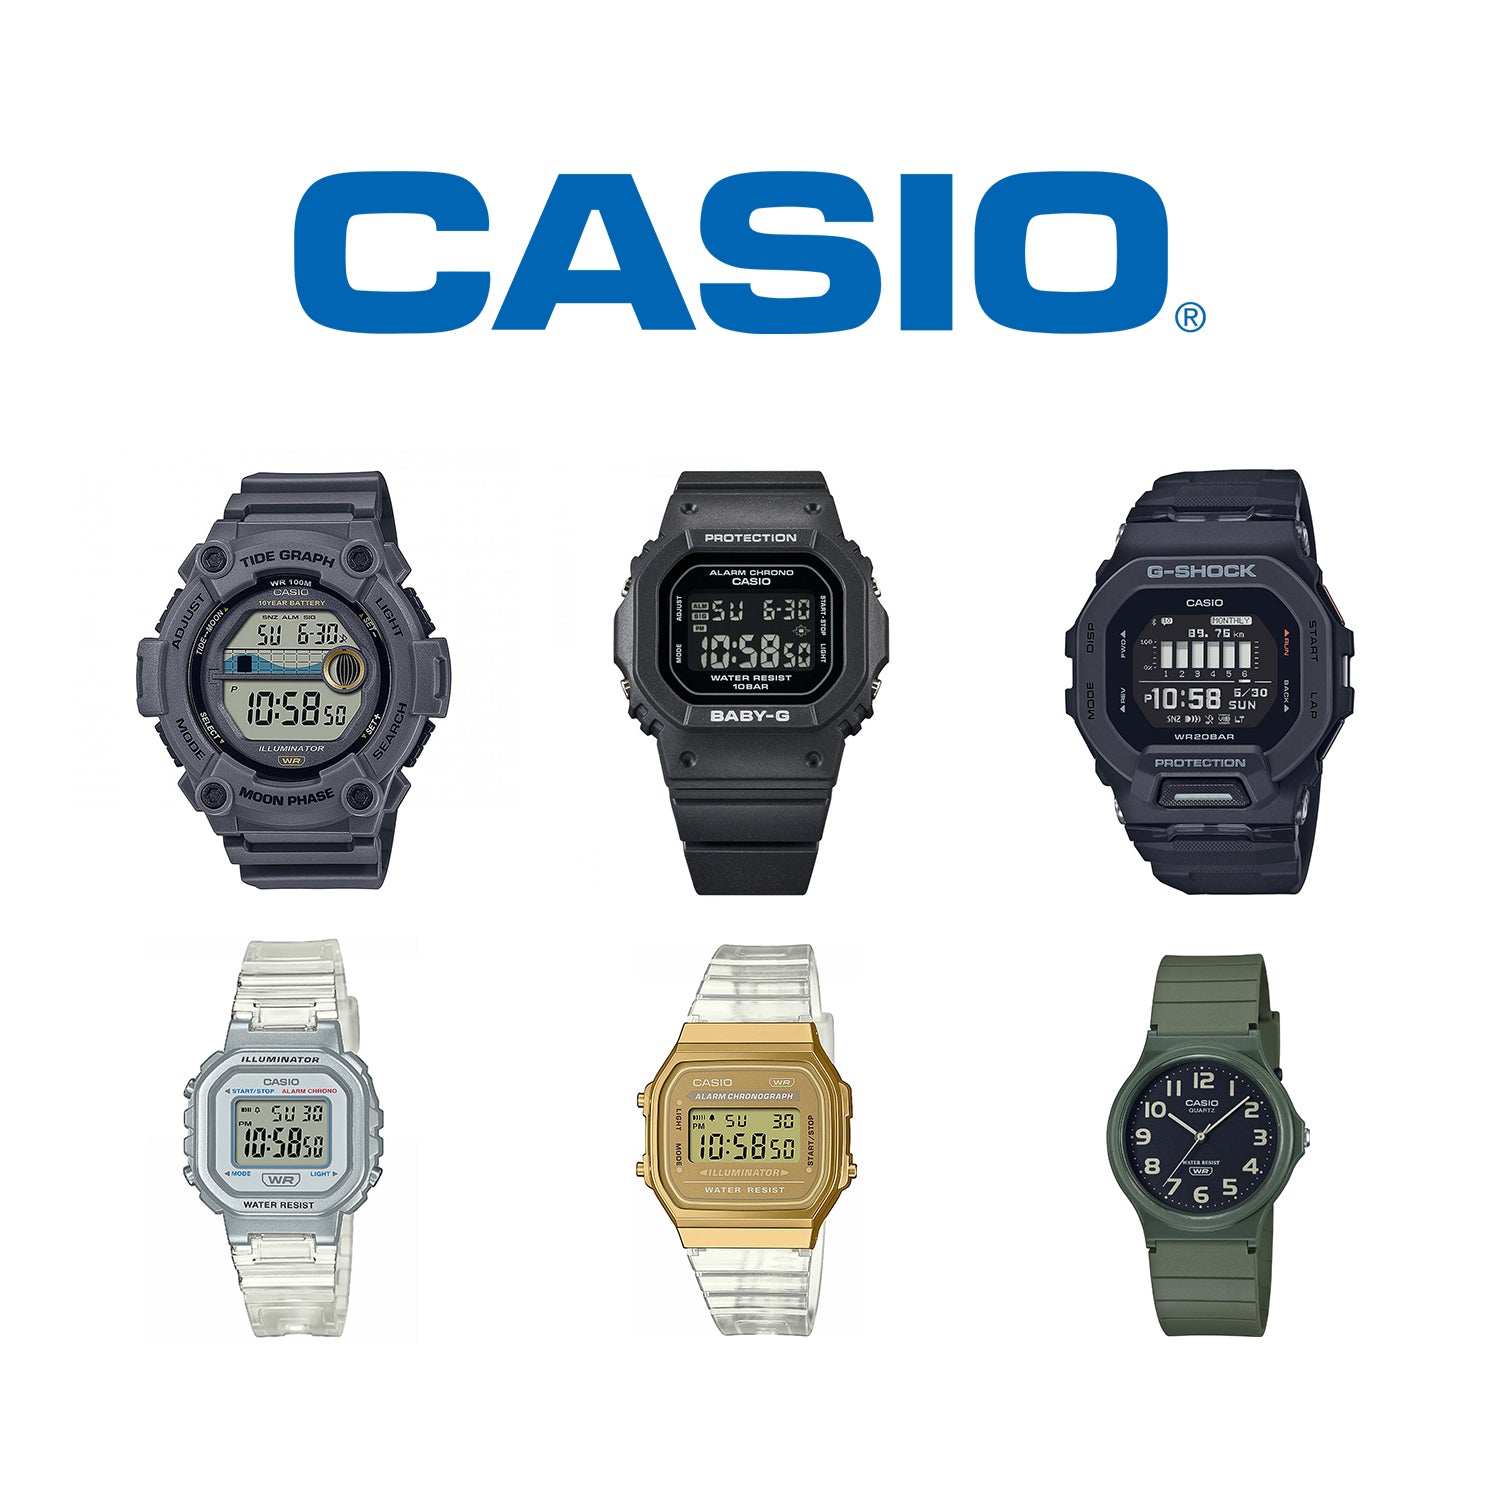 CASIO watches